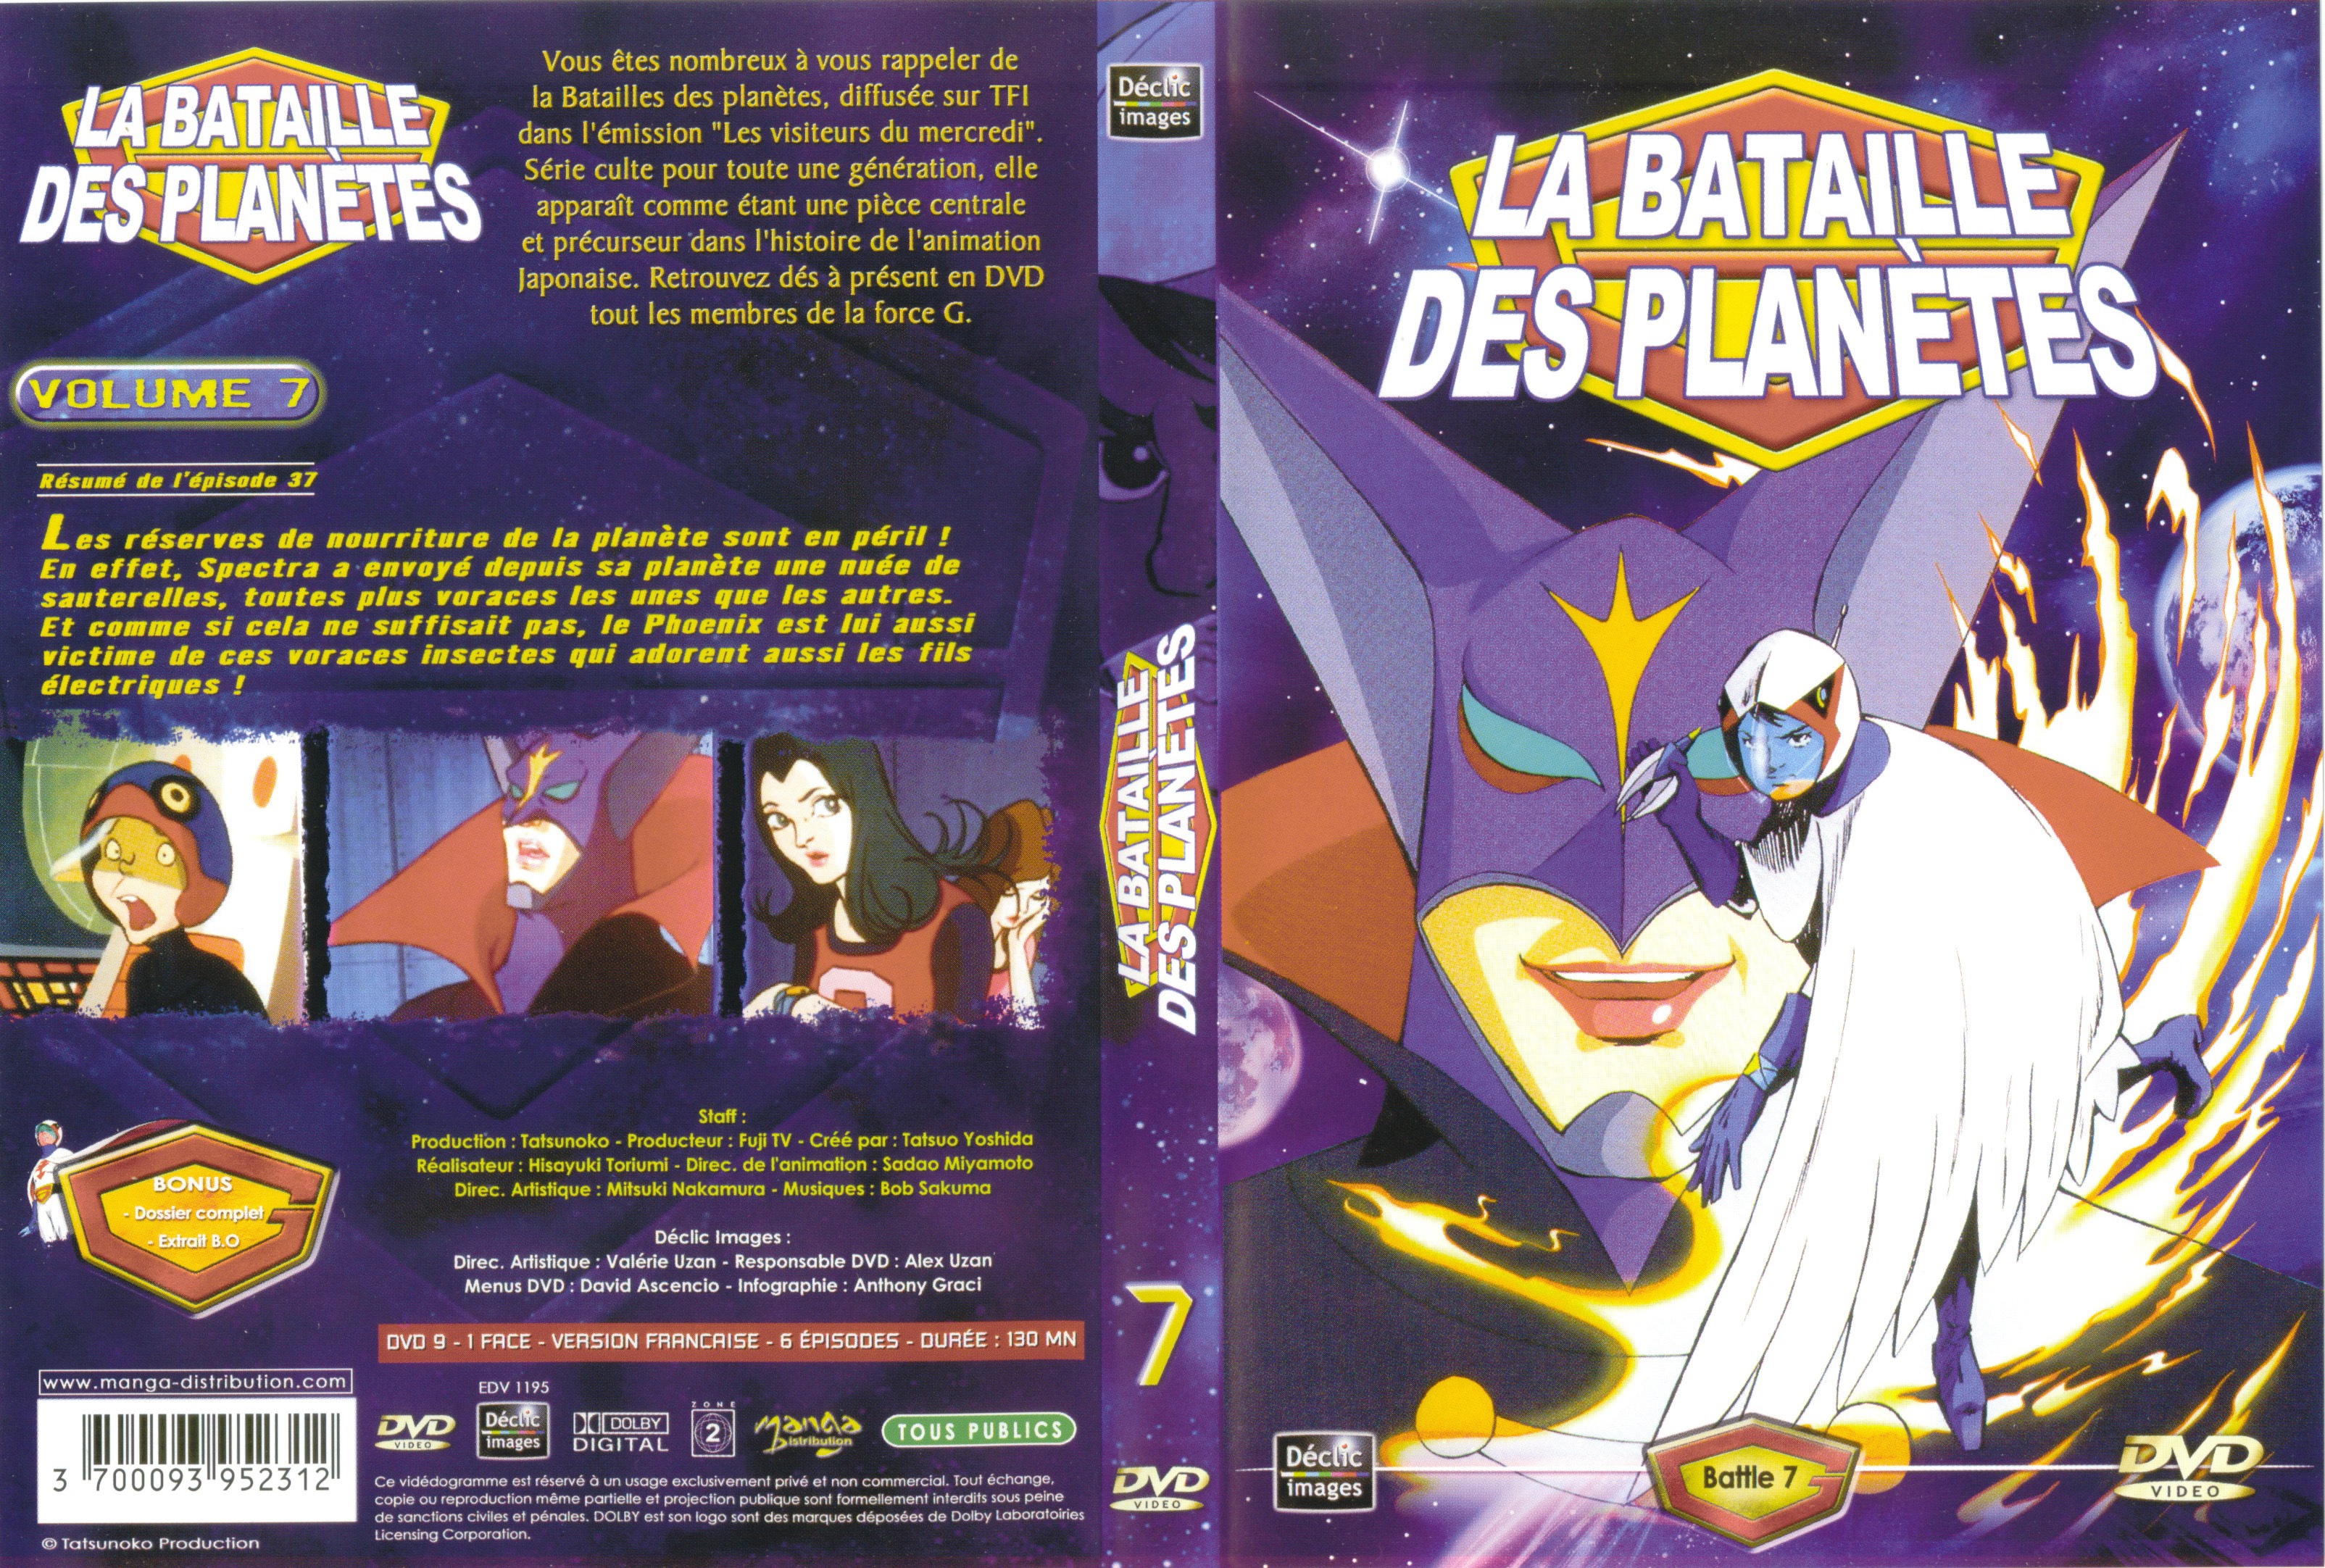 Jaquette DVD La bataille des planetes DVD 07